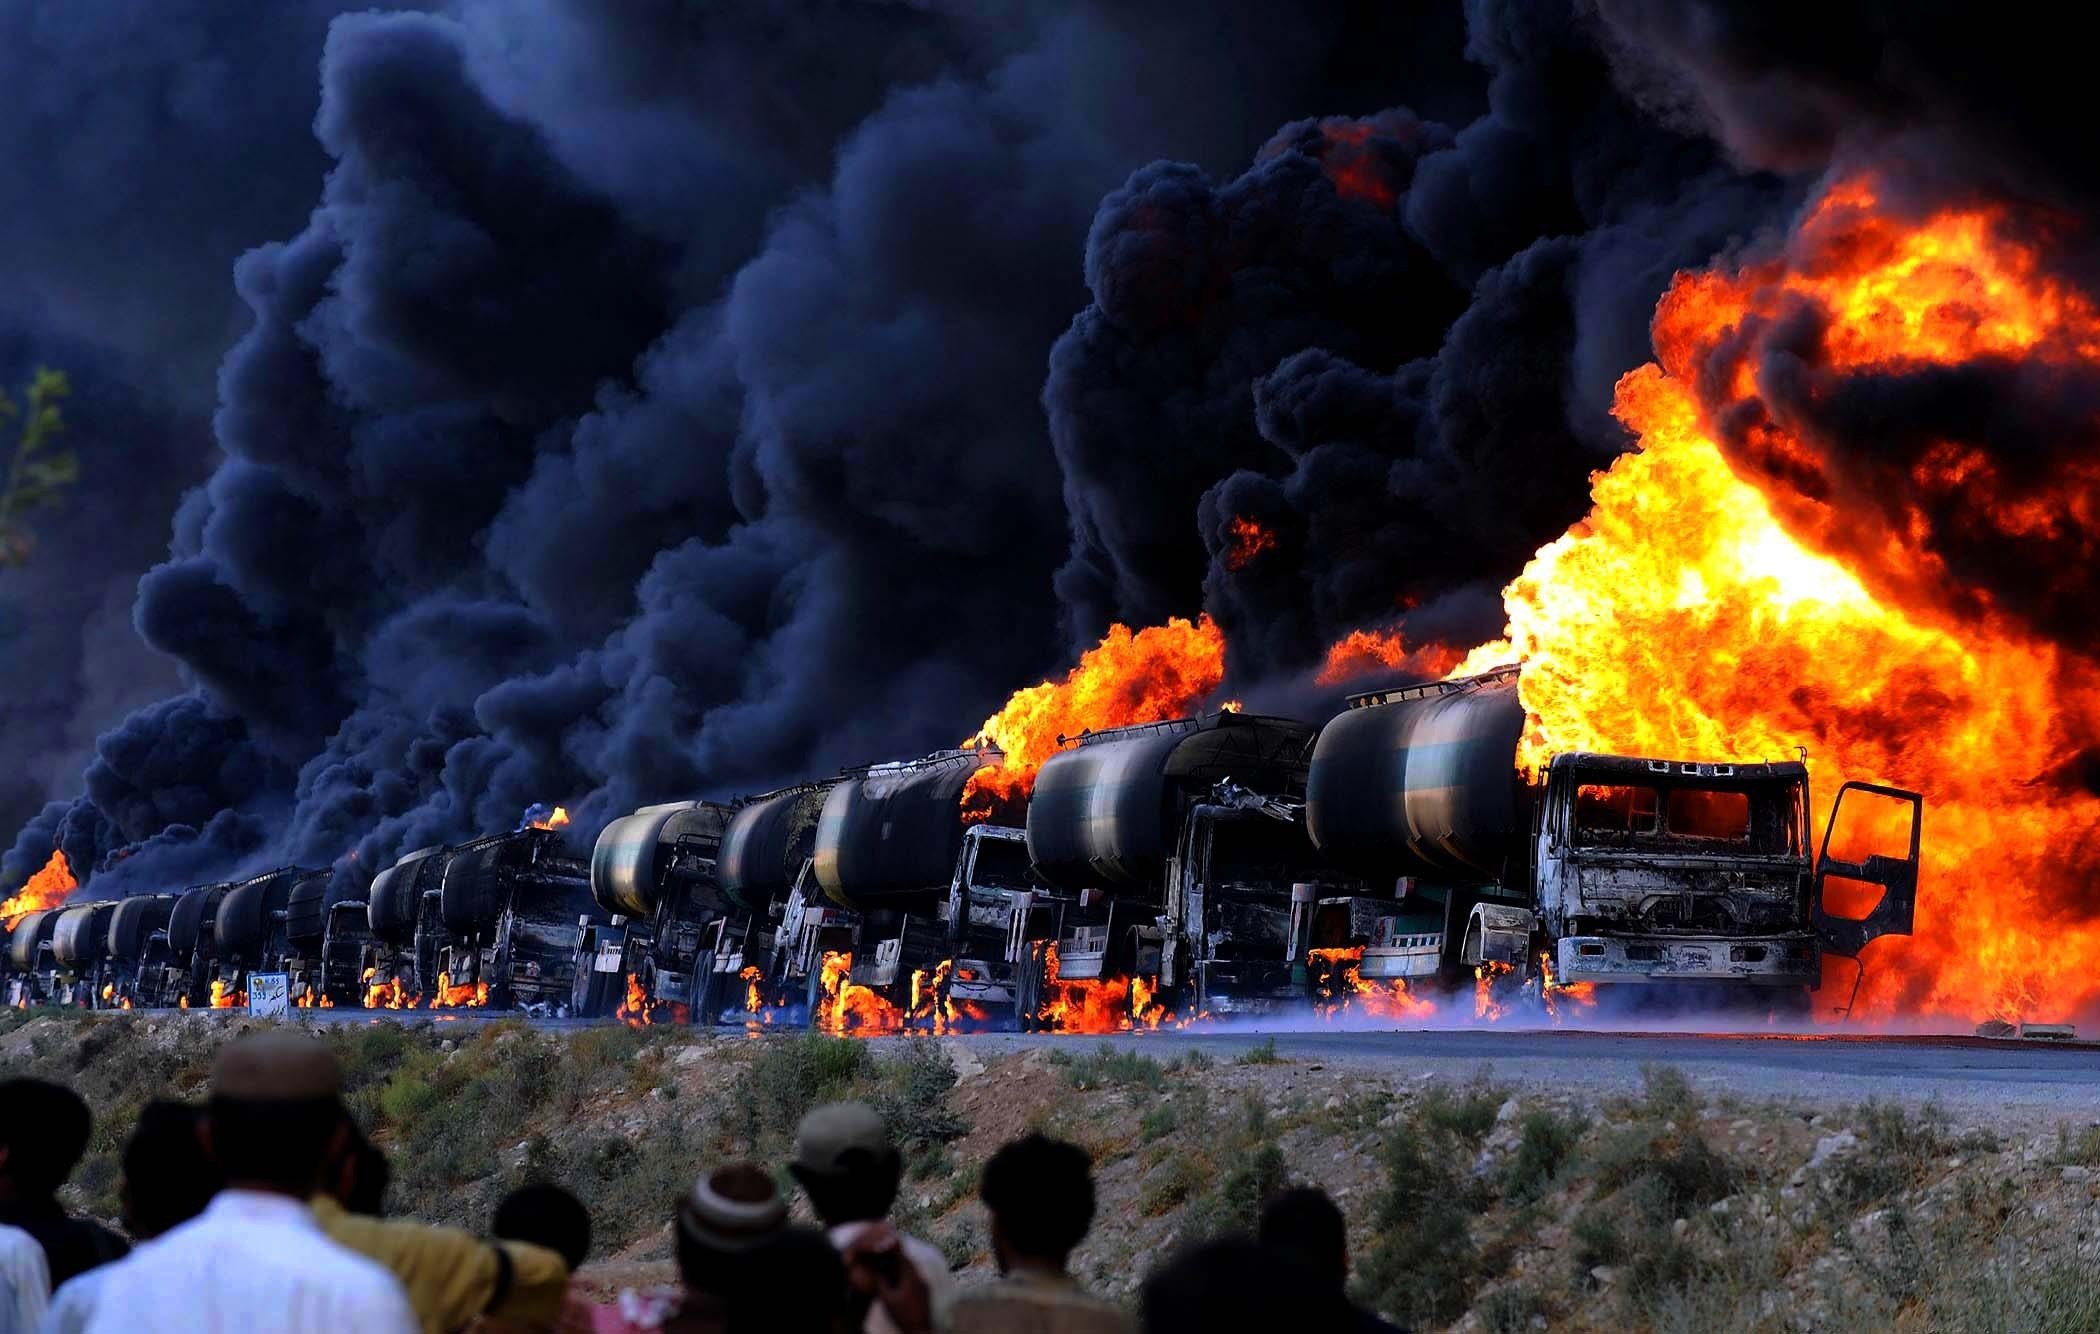 САА и ВКС РФ лишили ИГИЛ крупнейшего нефтяного месторождения в Дейр-эз-Зор